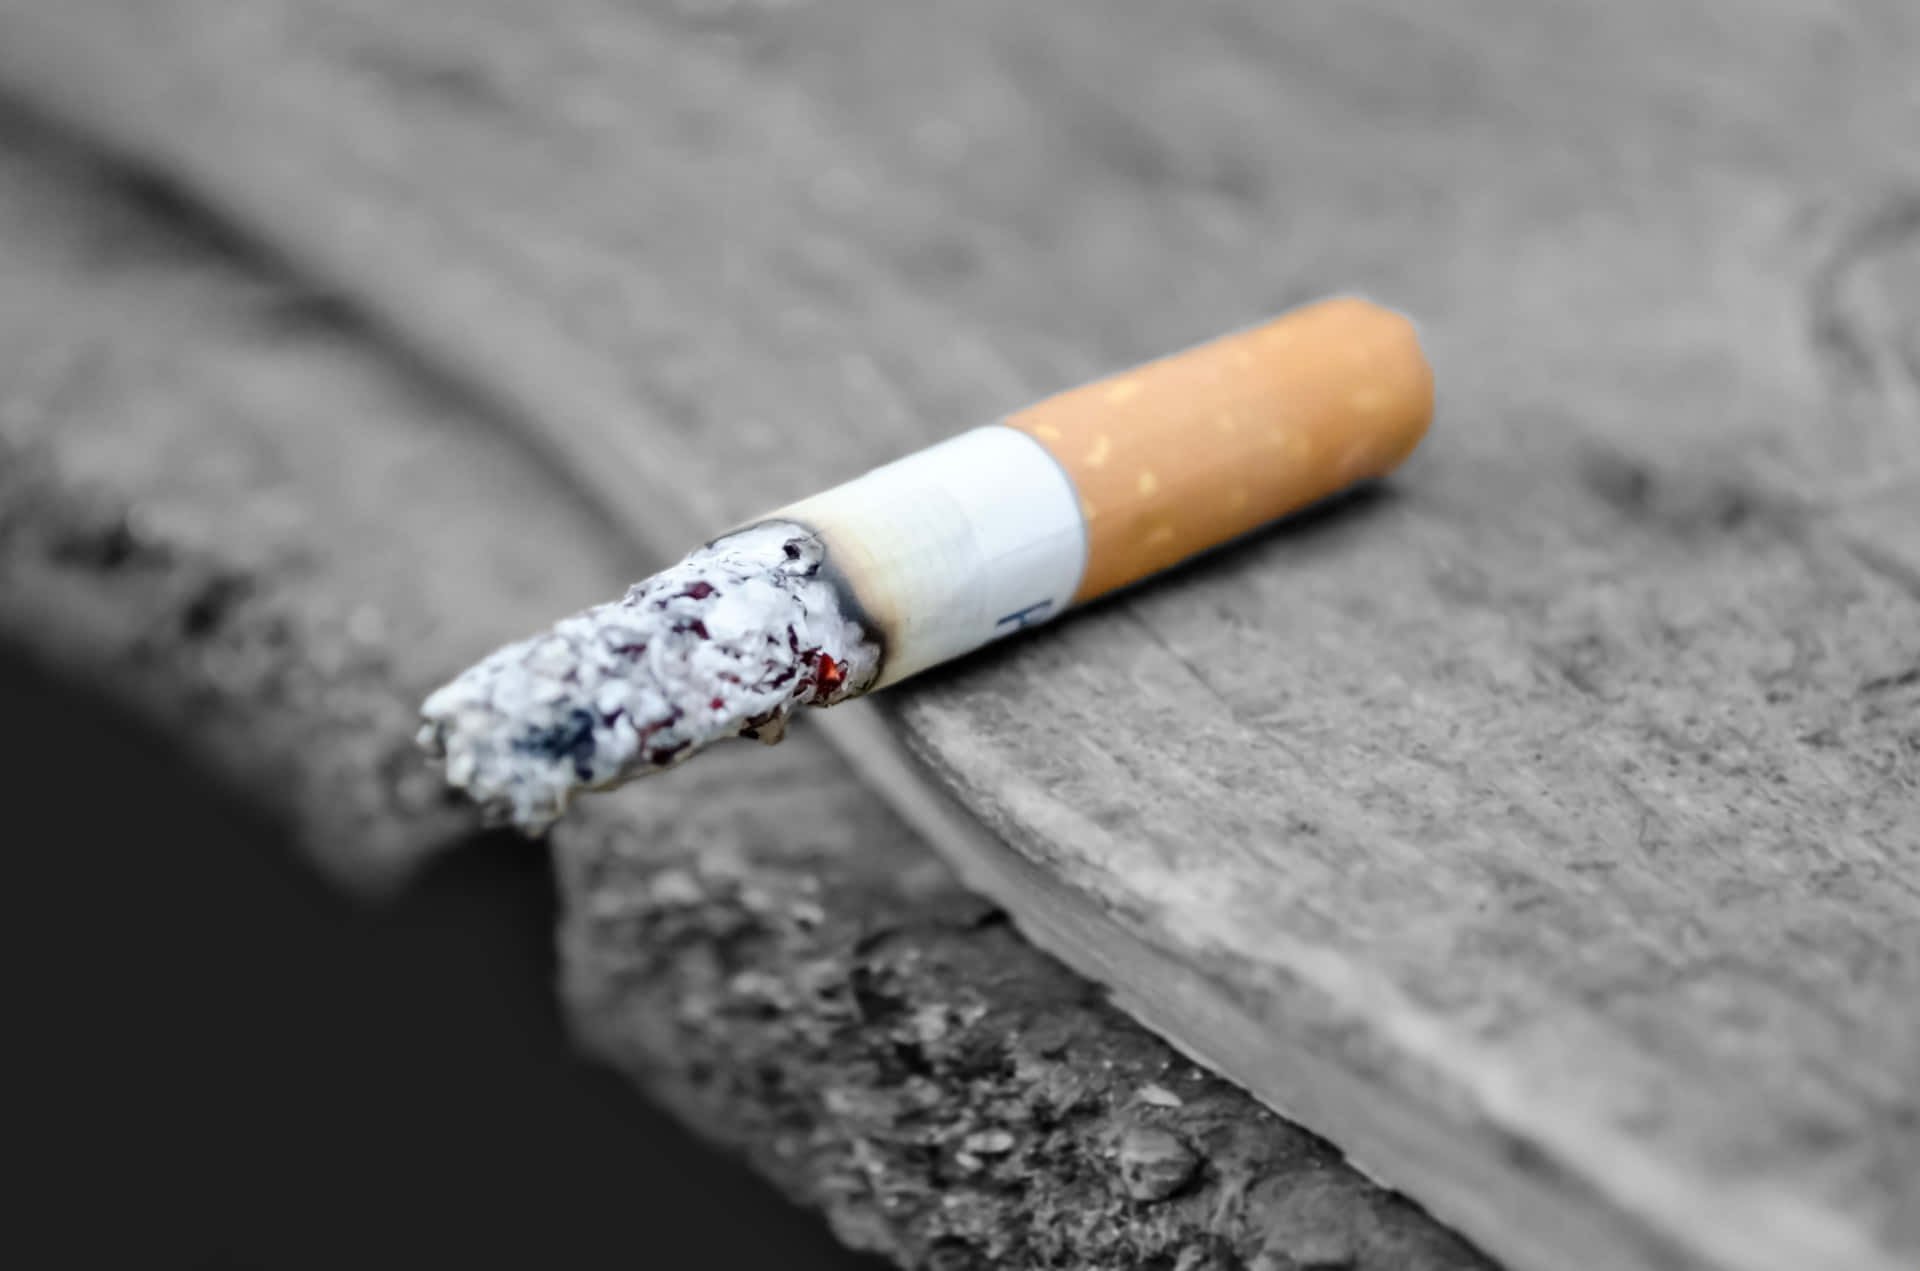 Imagende Un Cigarrillo A Medio Consumir.